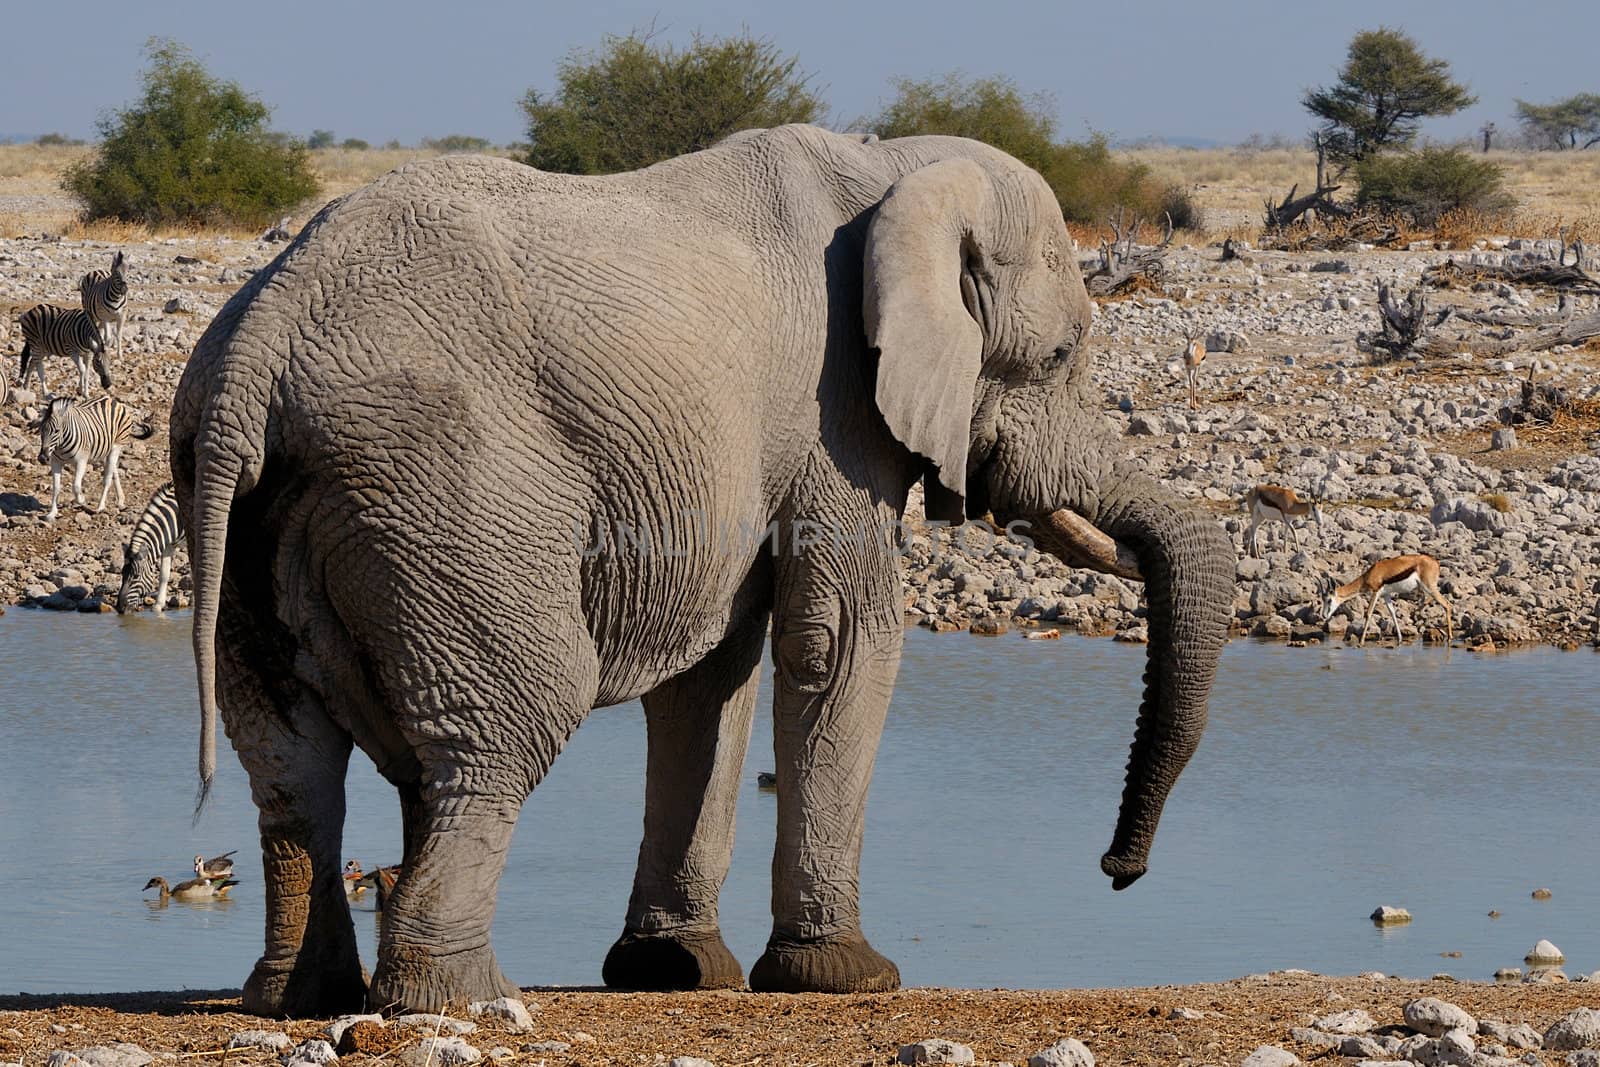 Elephant resting it's trunk on tusk in the Etosha National Park, Namibia